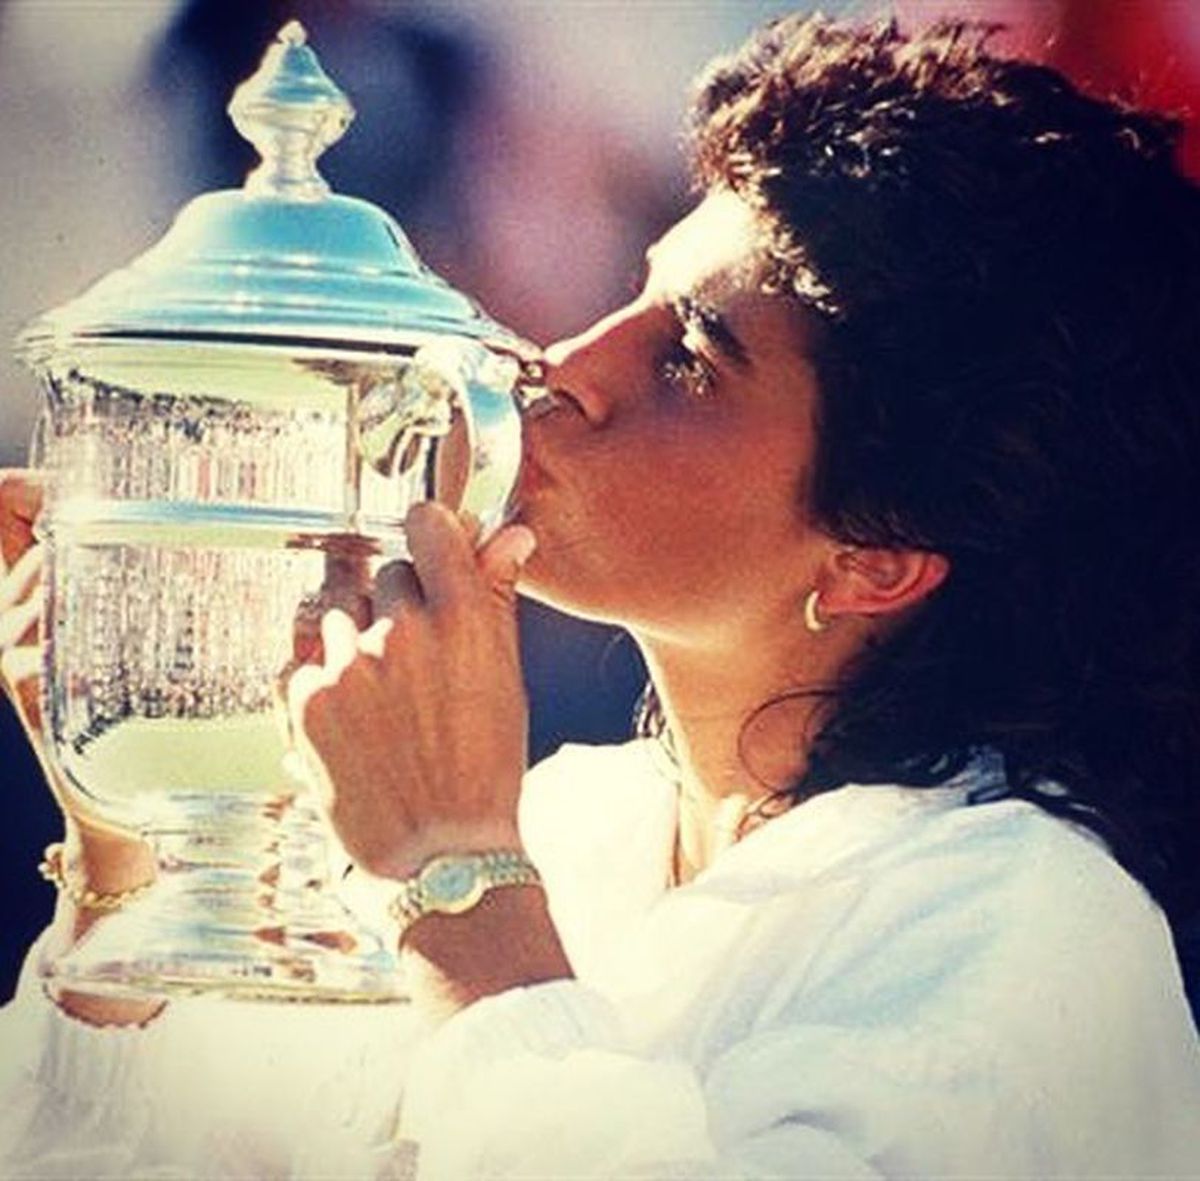 Incredibil cum arată Gabriela Sabatini, la 52 de ani! Cea mai frumoasă jucătoare a anilor '90 a făcut senzație în demonstrativul jucat alături de Nadal